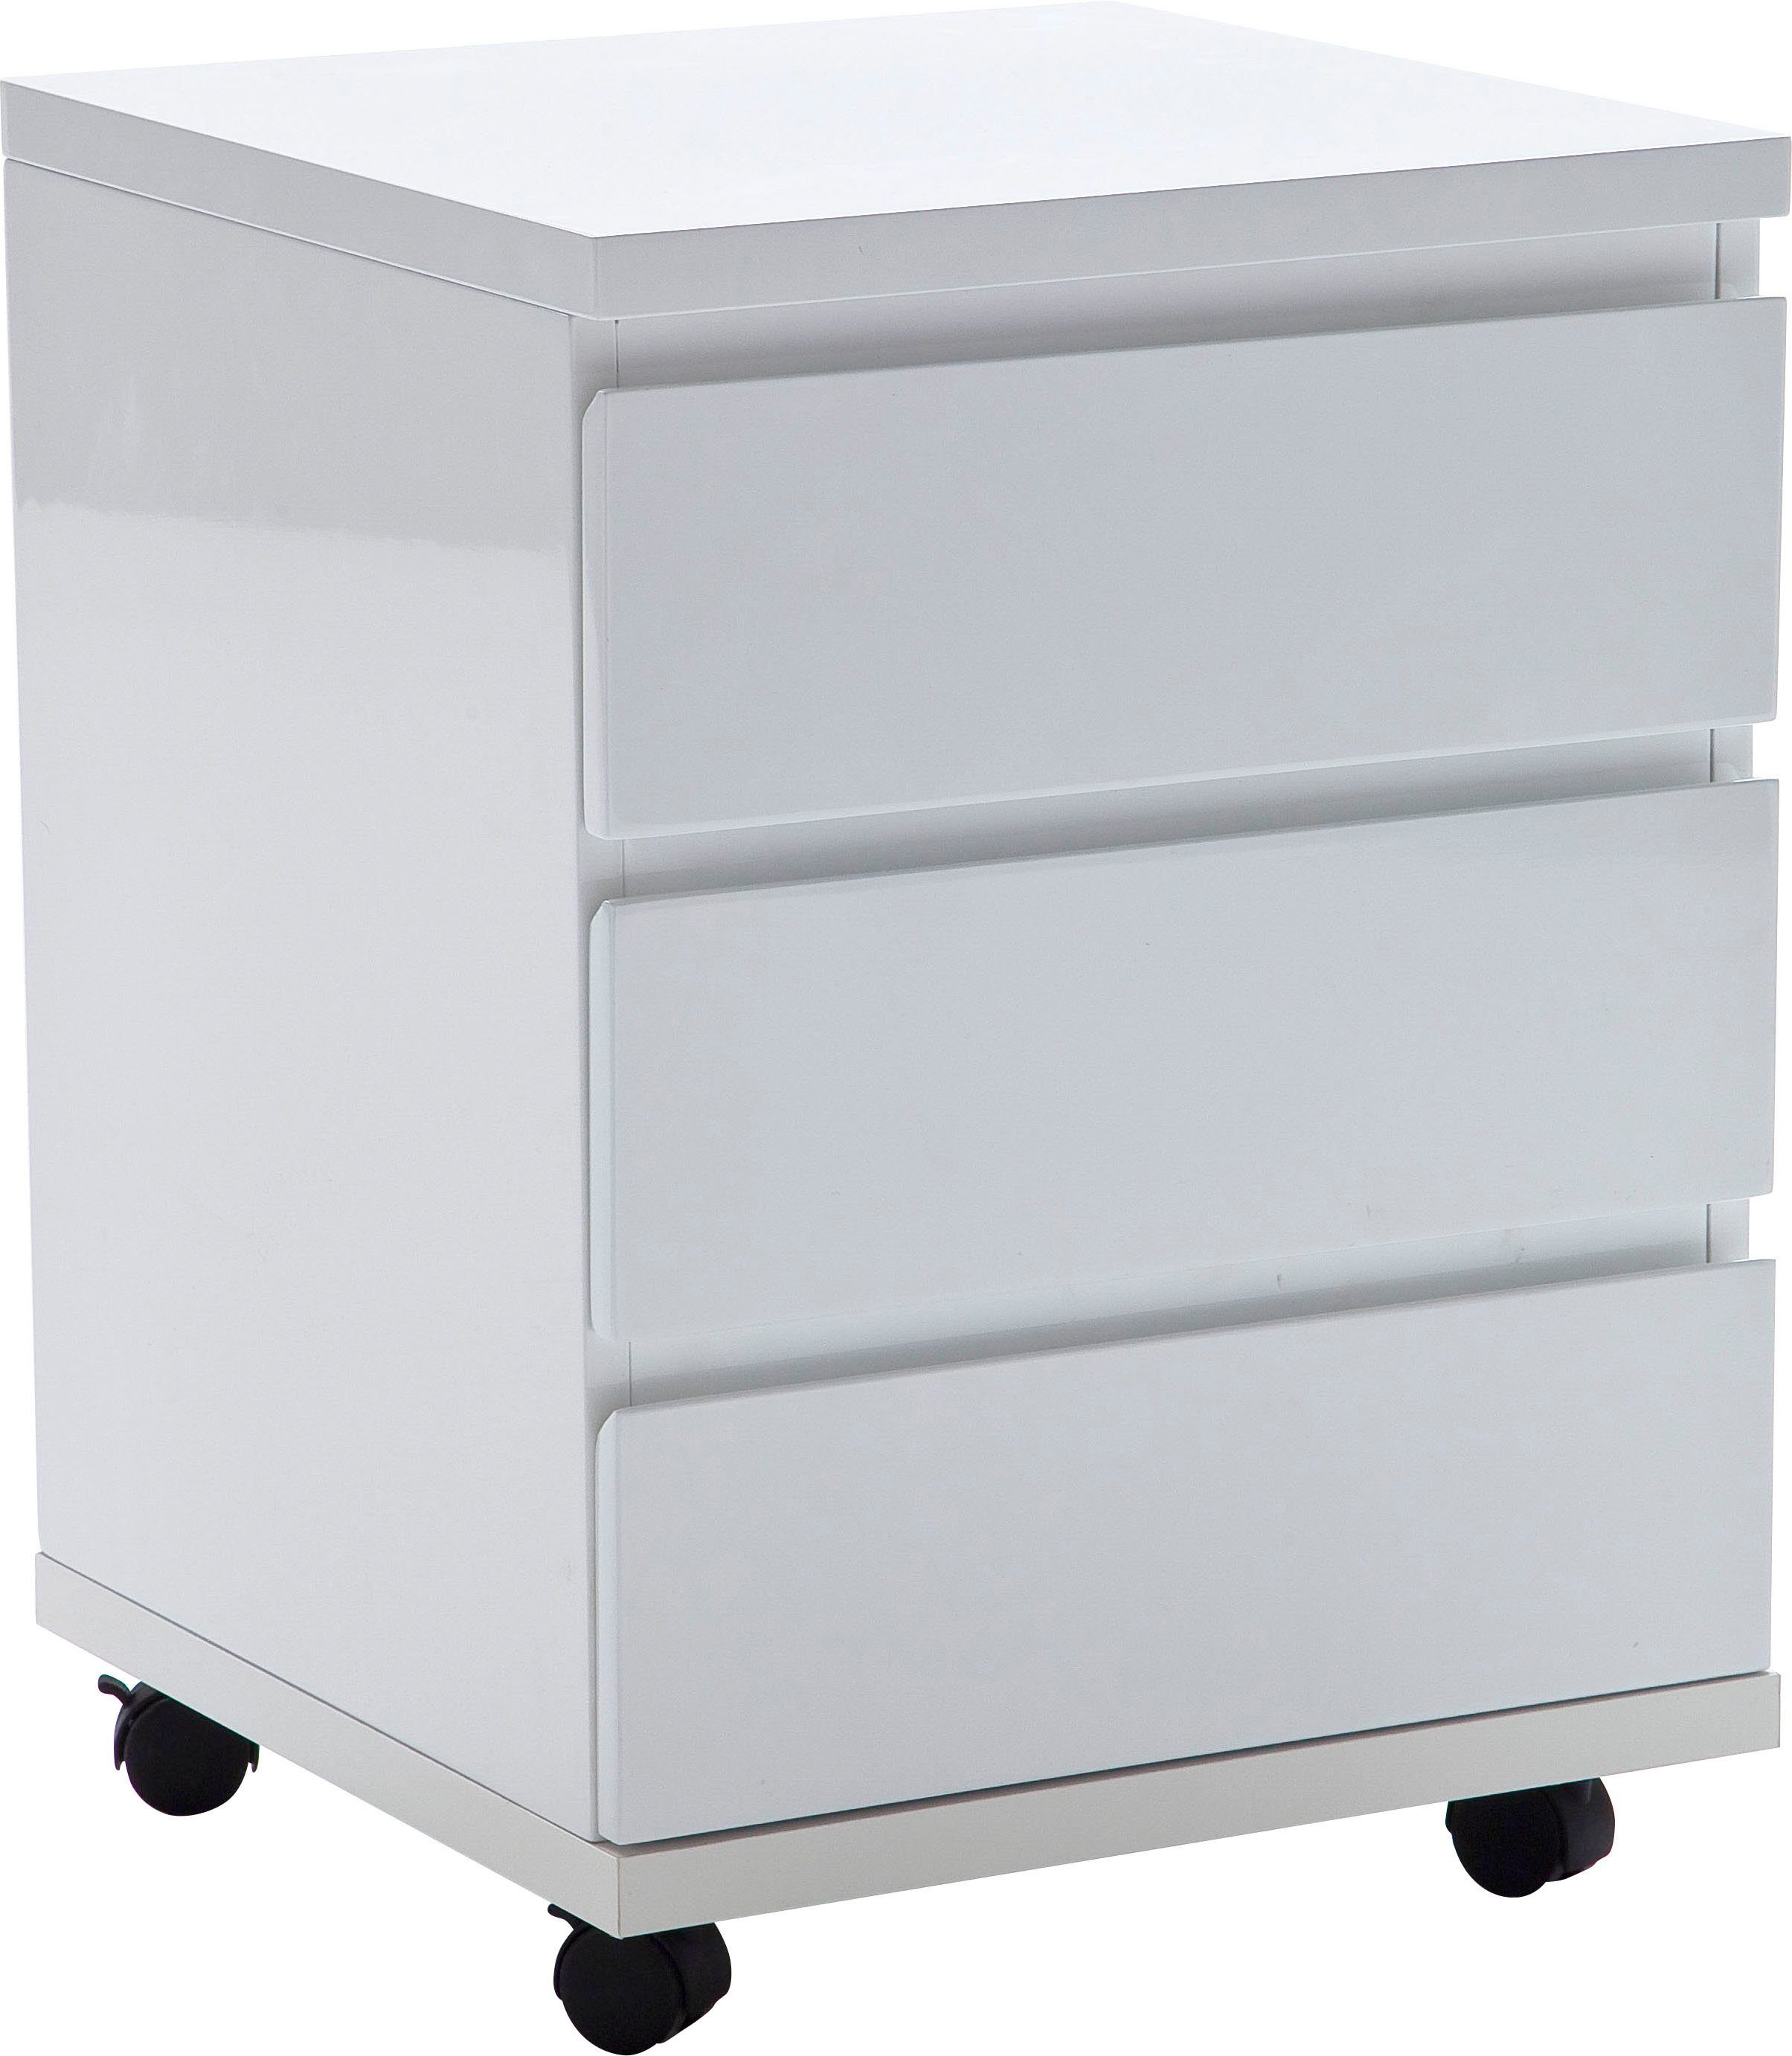 MCA furniture Rollcontainer RC, Büroschrank rollbar, hochglanz weiß